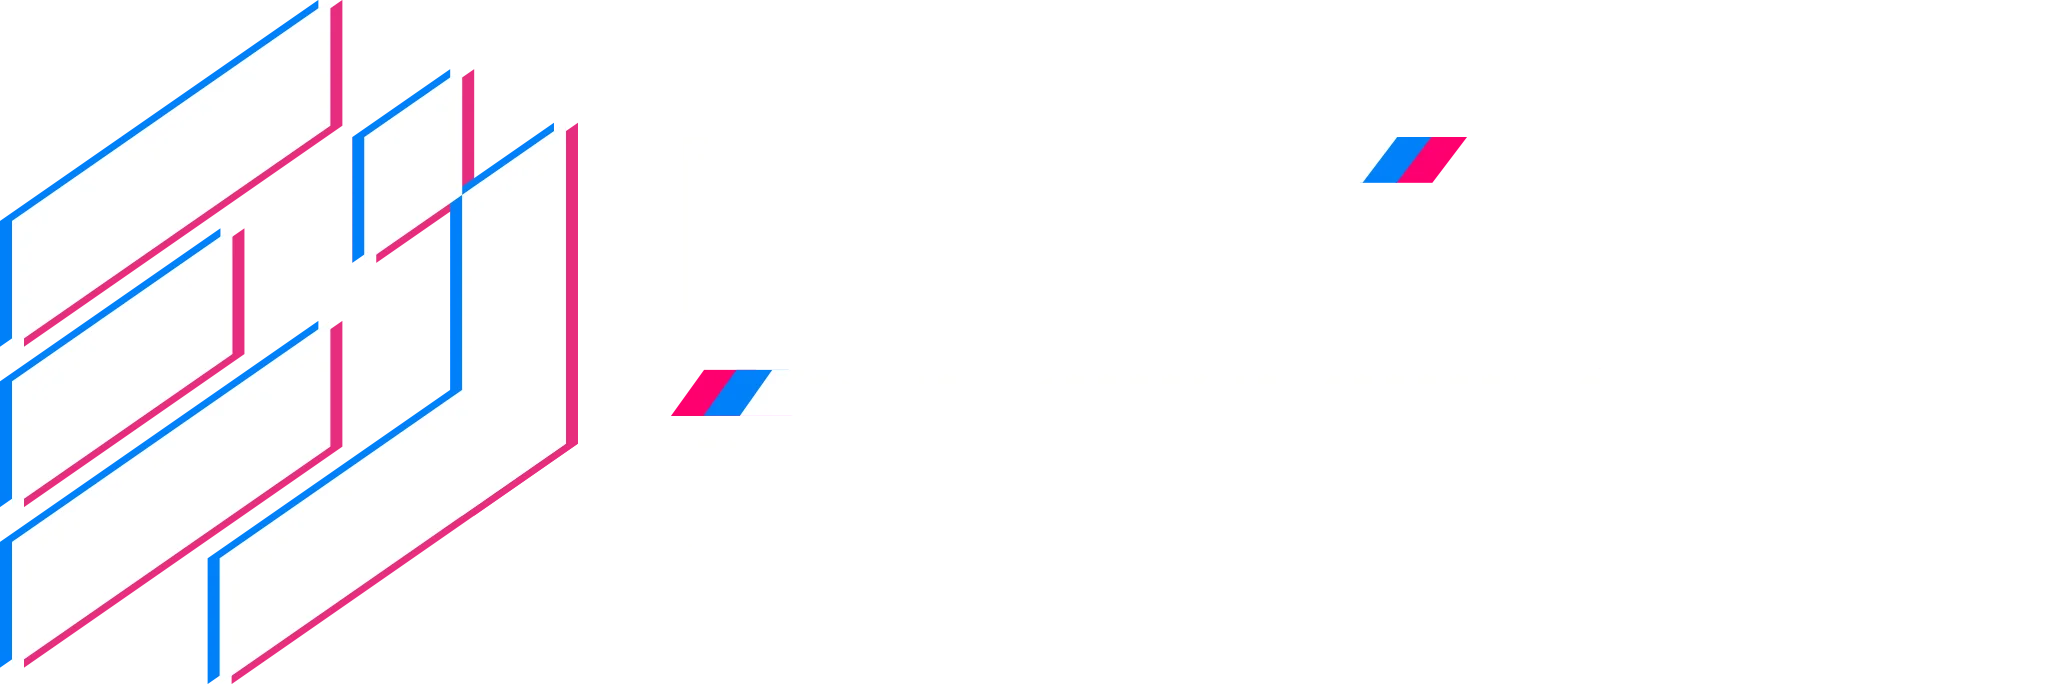 EPIC Digitais